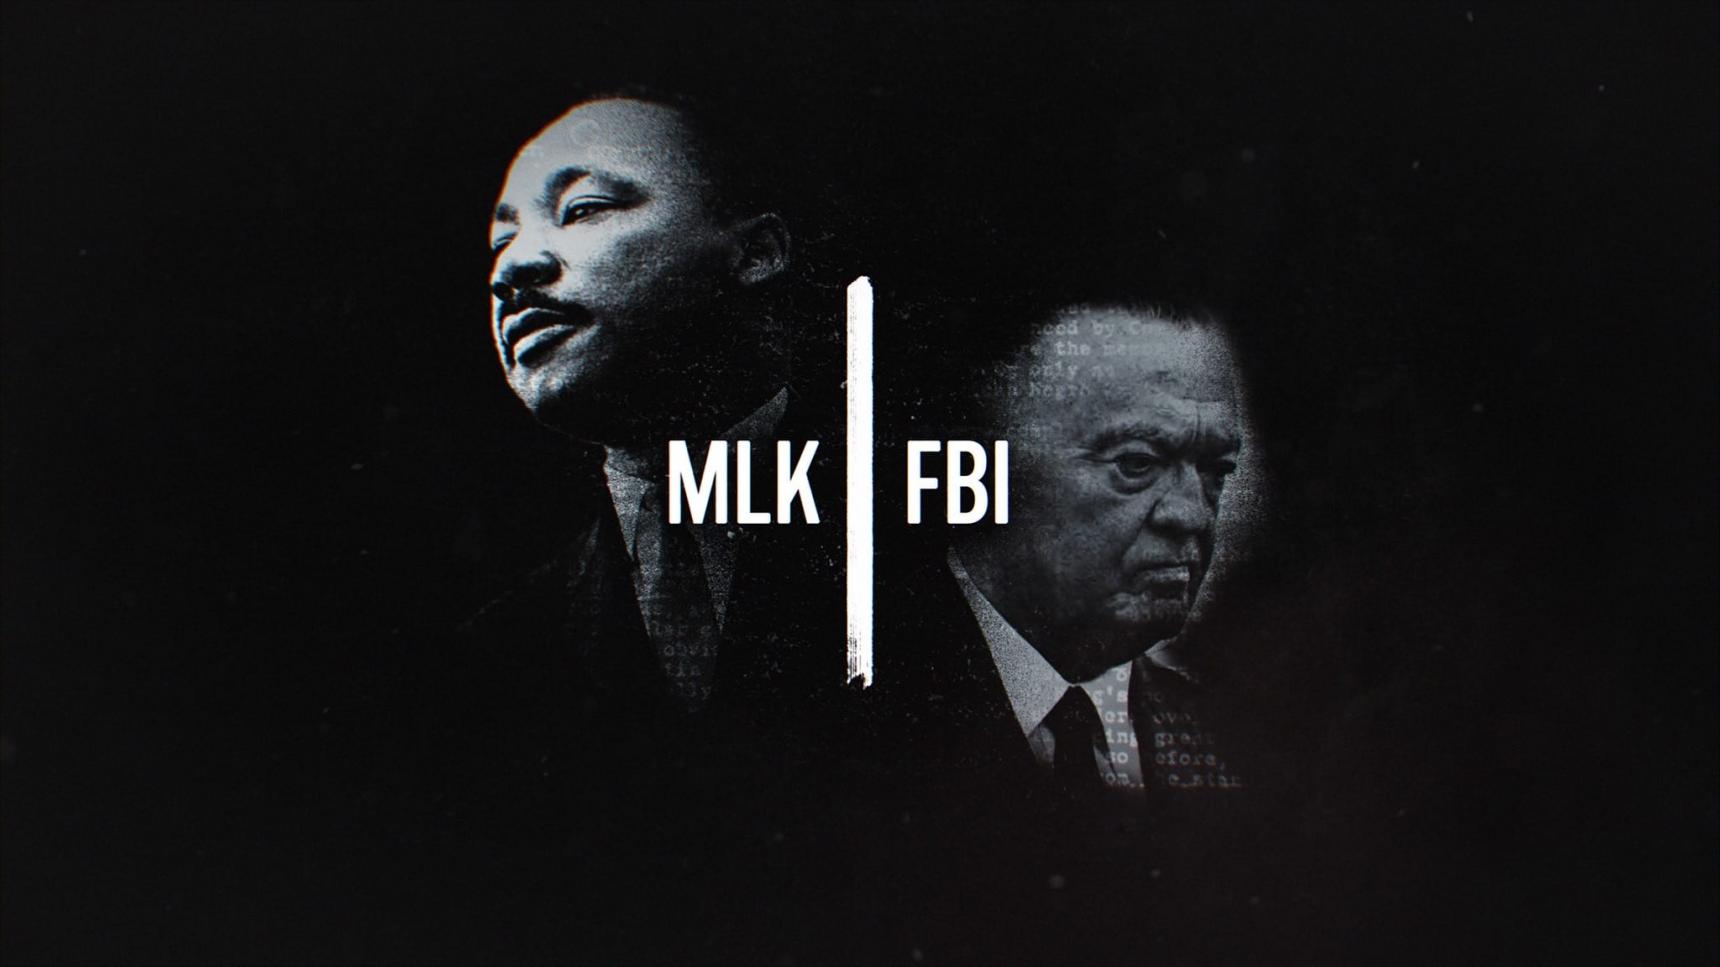 poster de Martin Luther King y el FBI